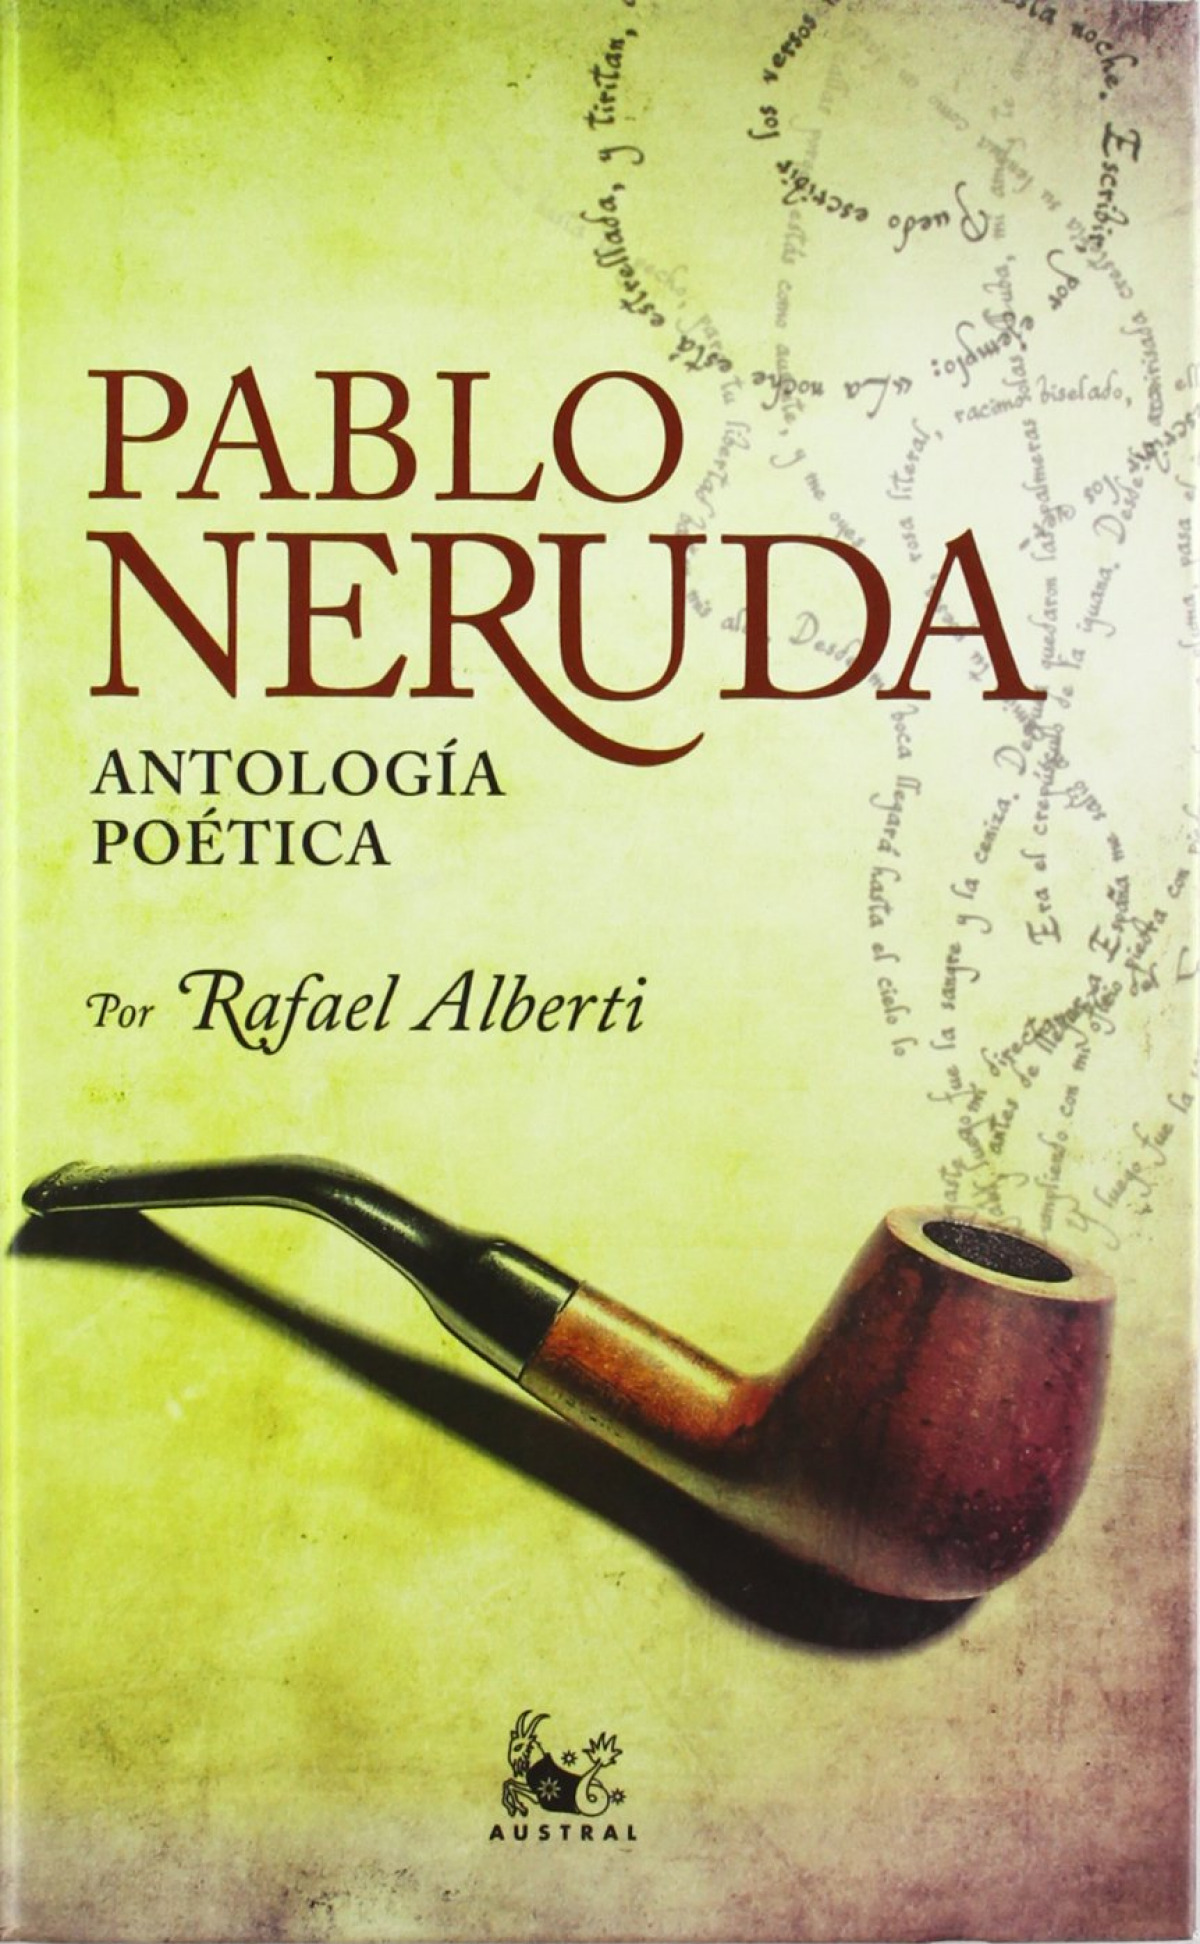 Antología poética POR RAFAEL ALBERTI (TAPA DURA) - Pablo Neruda